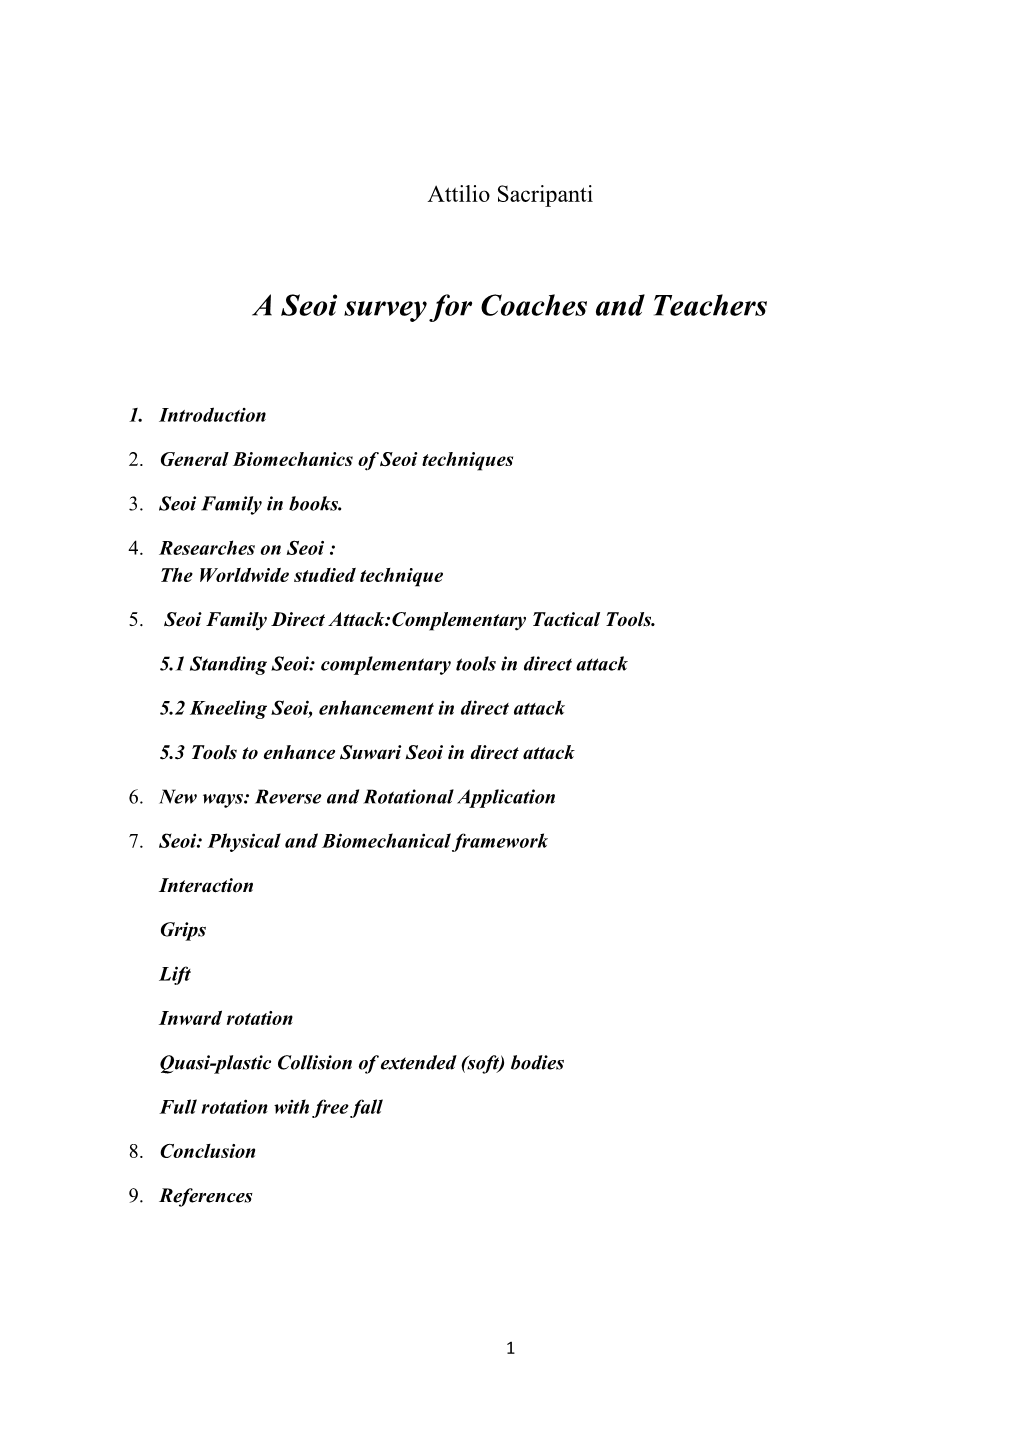 A Seoi Survey for Coaches and Teachers